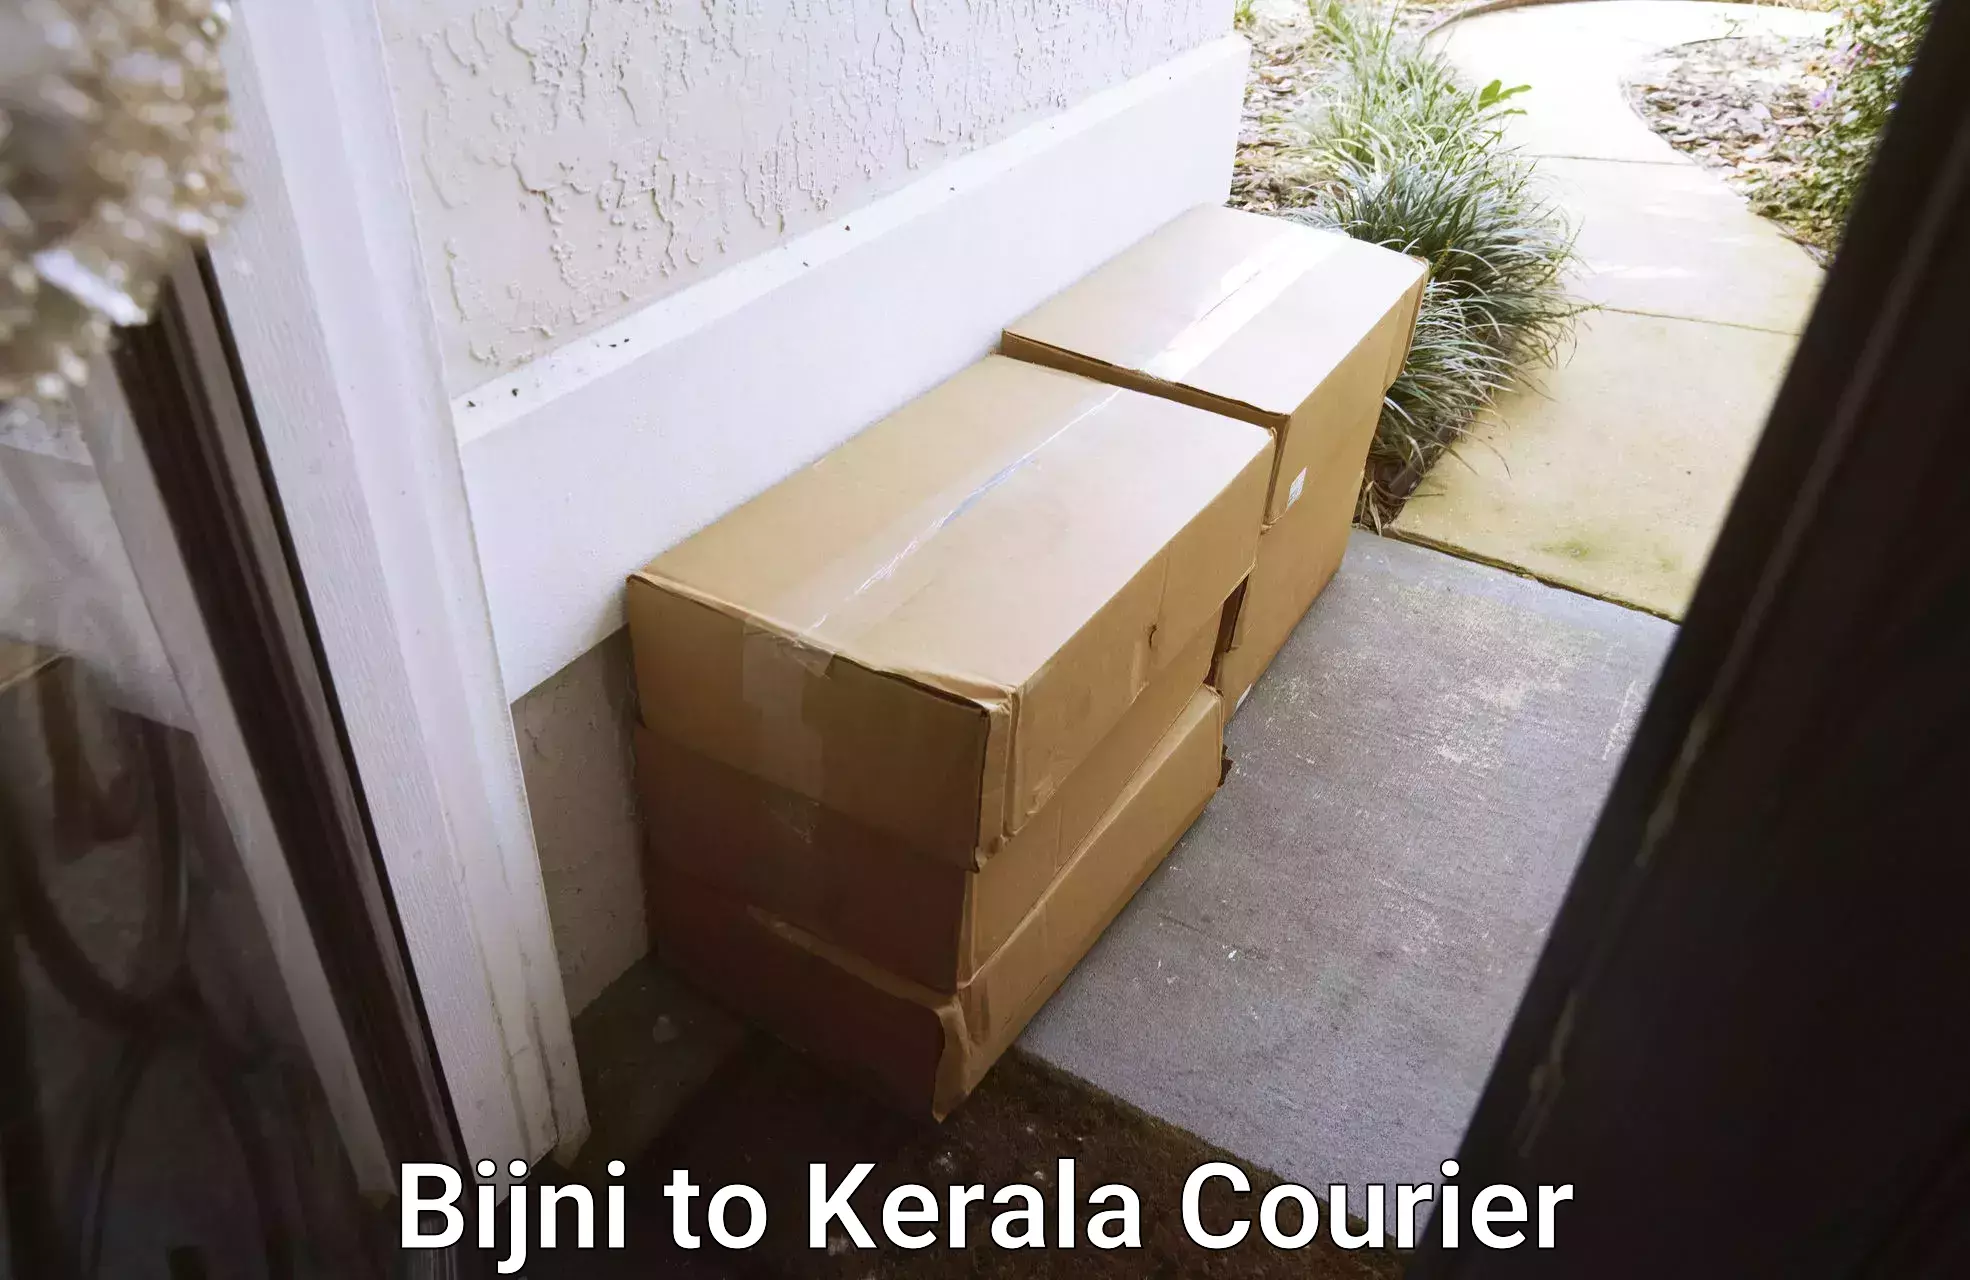 Courier services Bijni to Kuthiathode